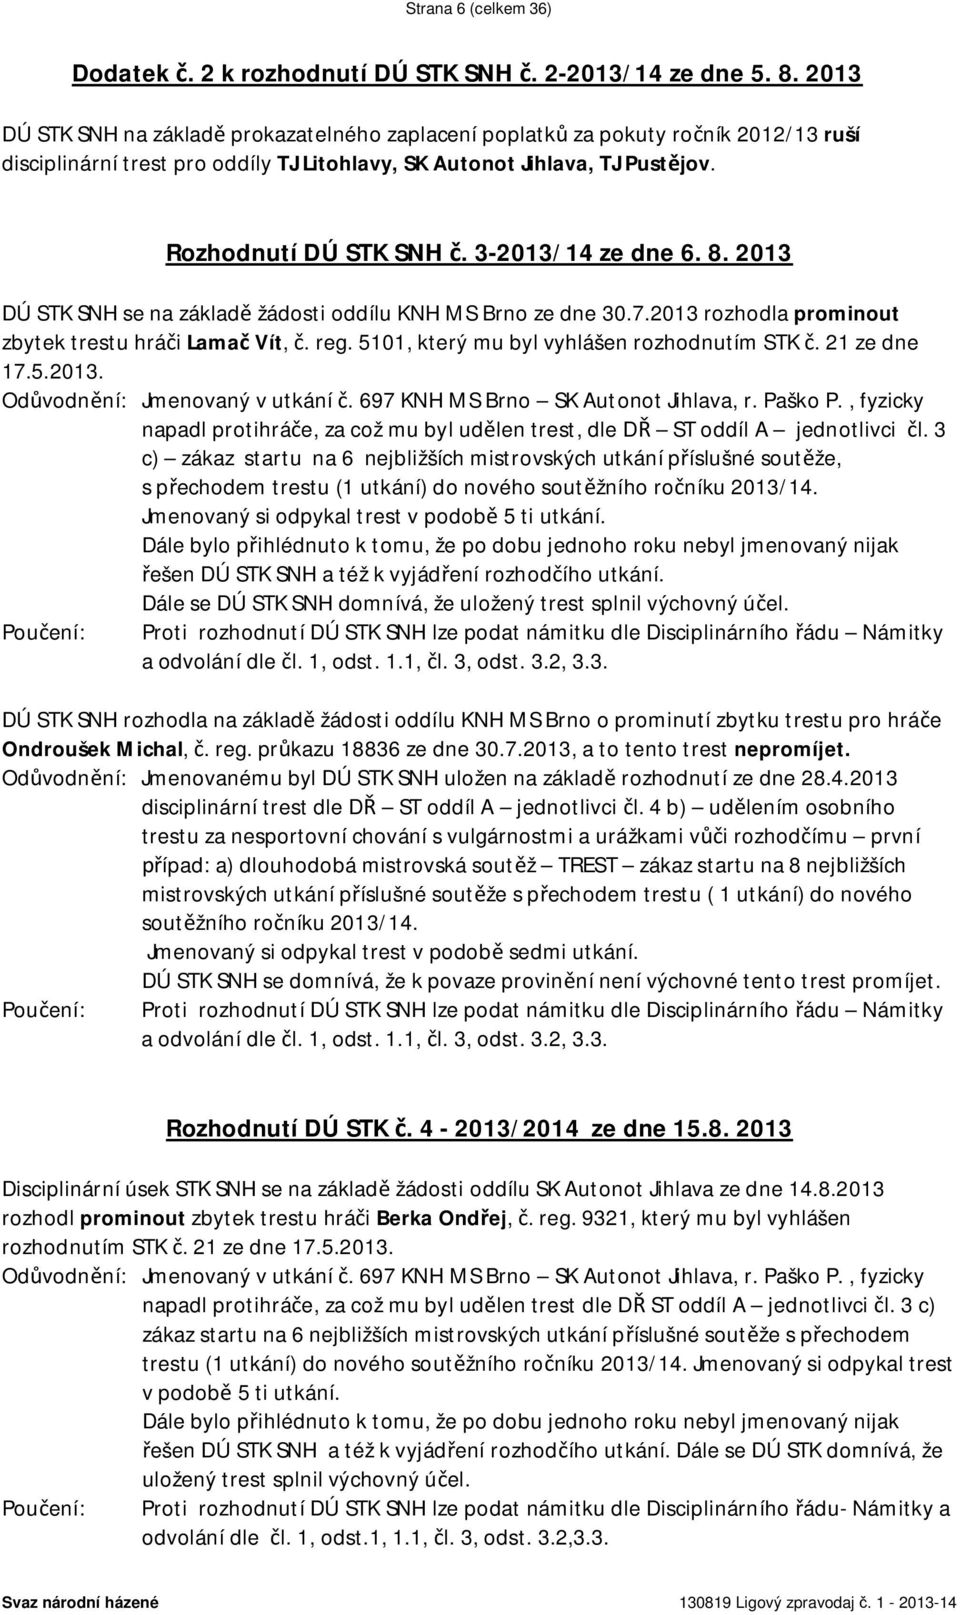 3-2013/14 ze dne 6. 8. 2013 DÚ STK SNH se na základ žádosti oddílu KNH MS Brno ze dne 30.7.2013 rozhodla prominout zbytek trestu hrá i Lama Vít,. reg. 5101, který mu byl vyhlášen rozhodnutím STK.